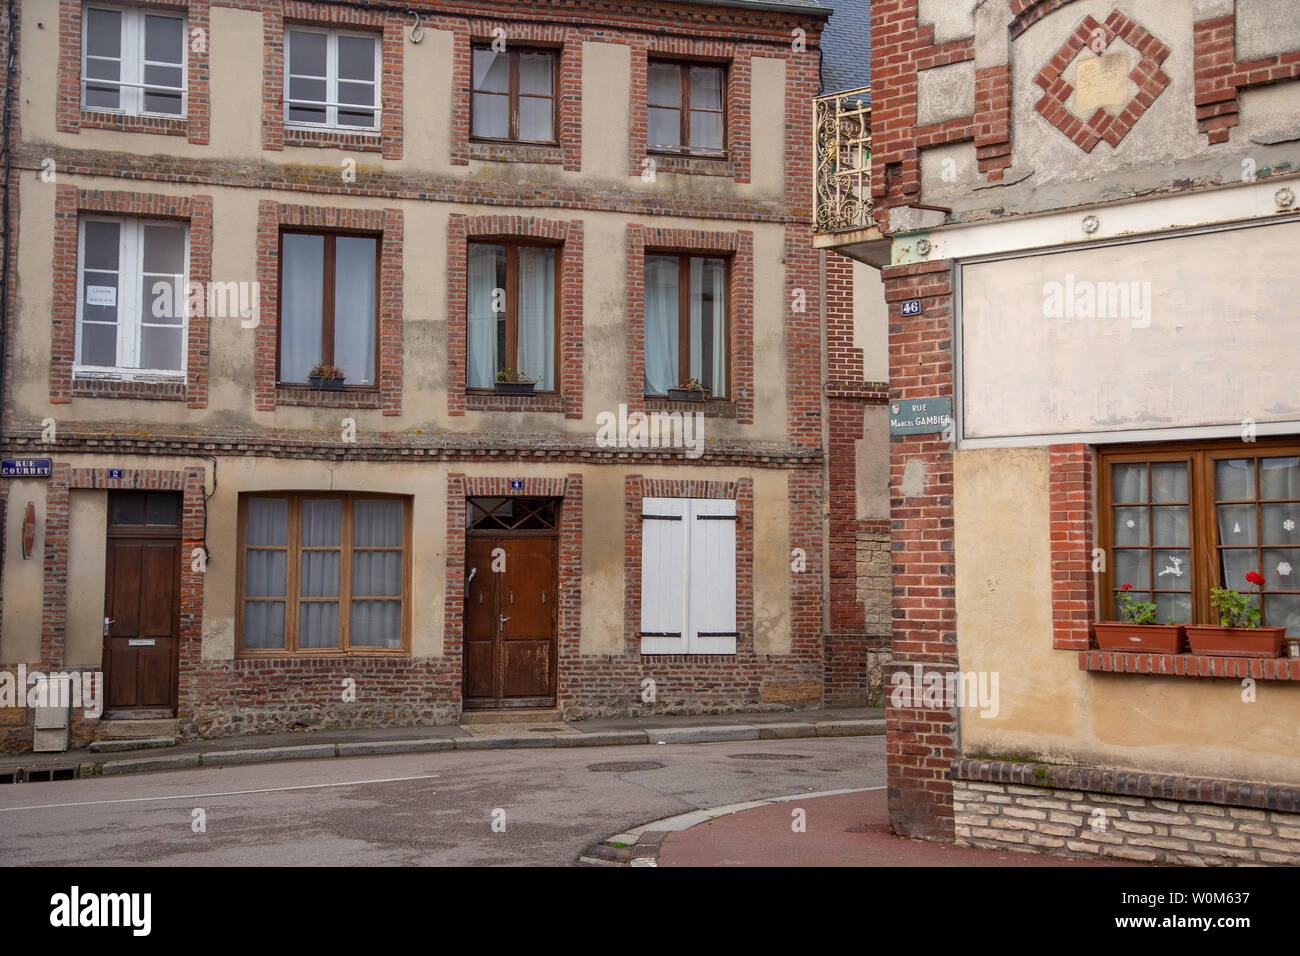 Livarot, Frankreich - Januar 2, 2019: typische Gebäude und Straßen von Livarot mit keine Menschen. Die für die Produktion der Livarot Käse bekannt. Stockfoto